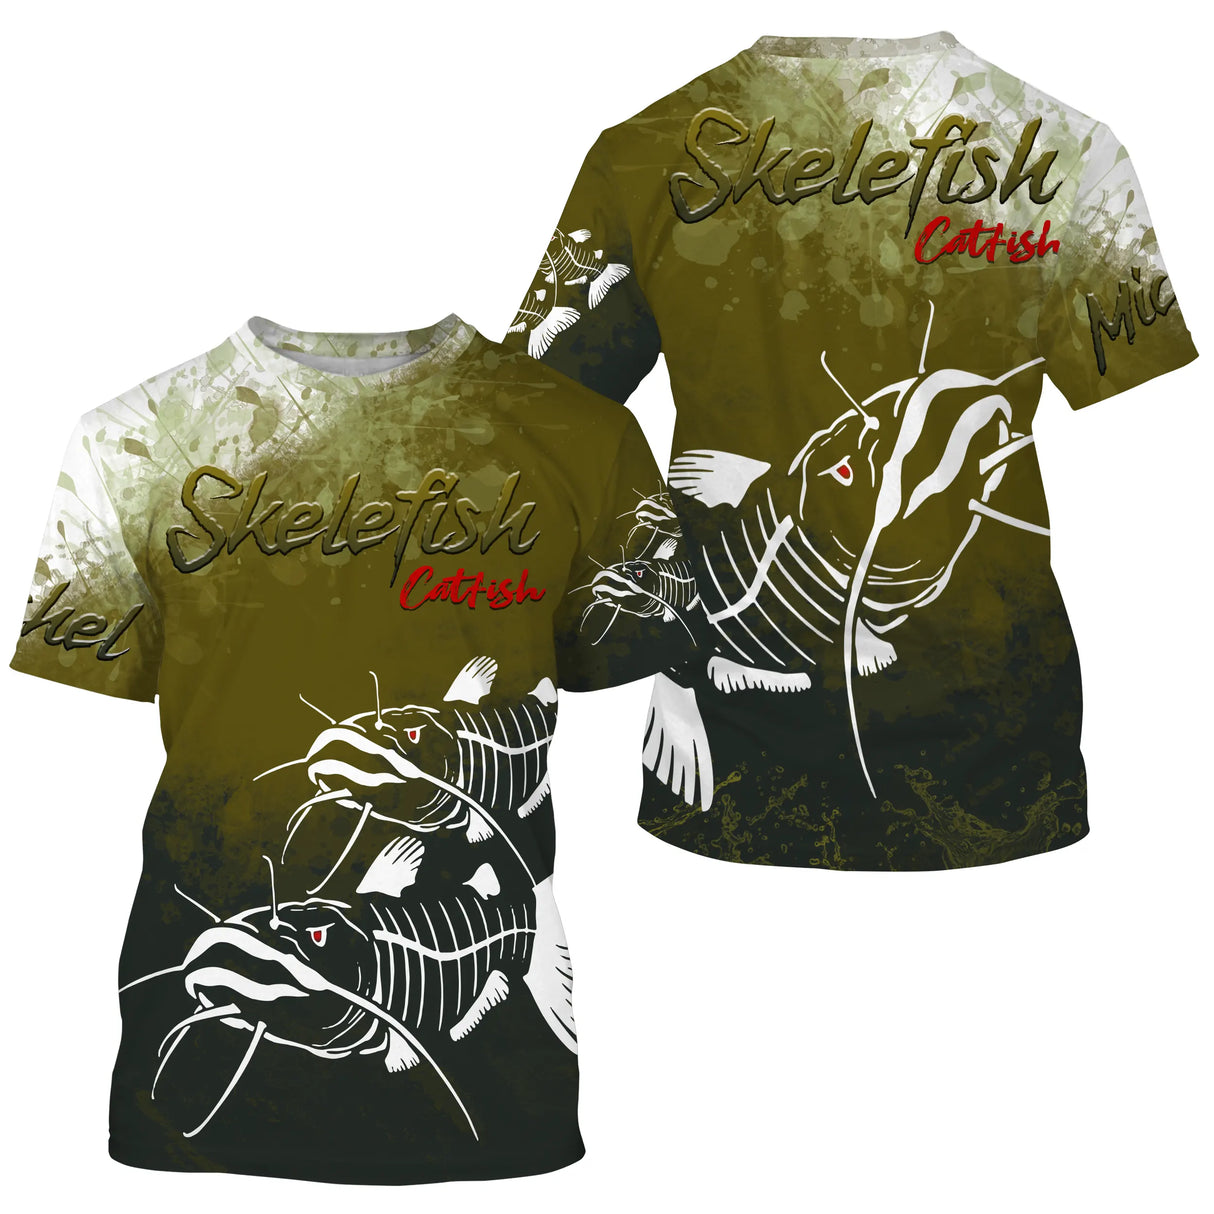 Camiseta de Pesca Anti-UV Personalizada, Regalo Original de Pescador, Bagre Skelefish - CT30072231